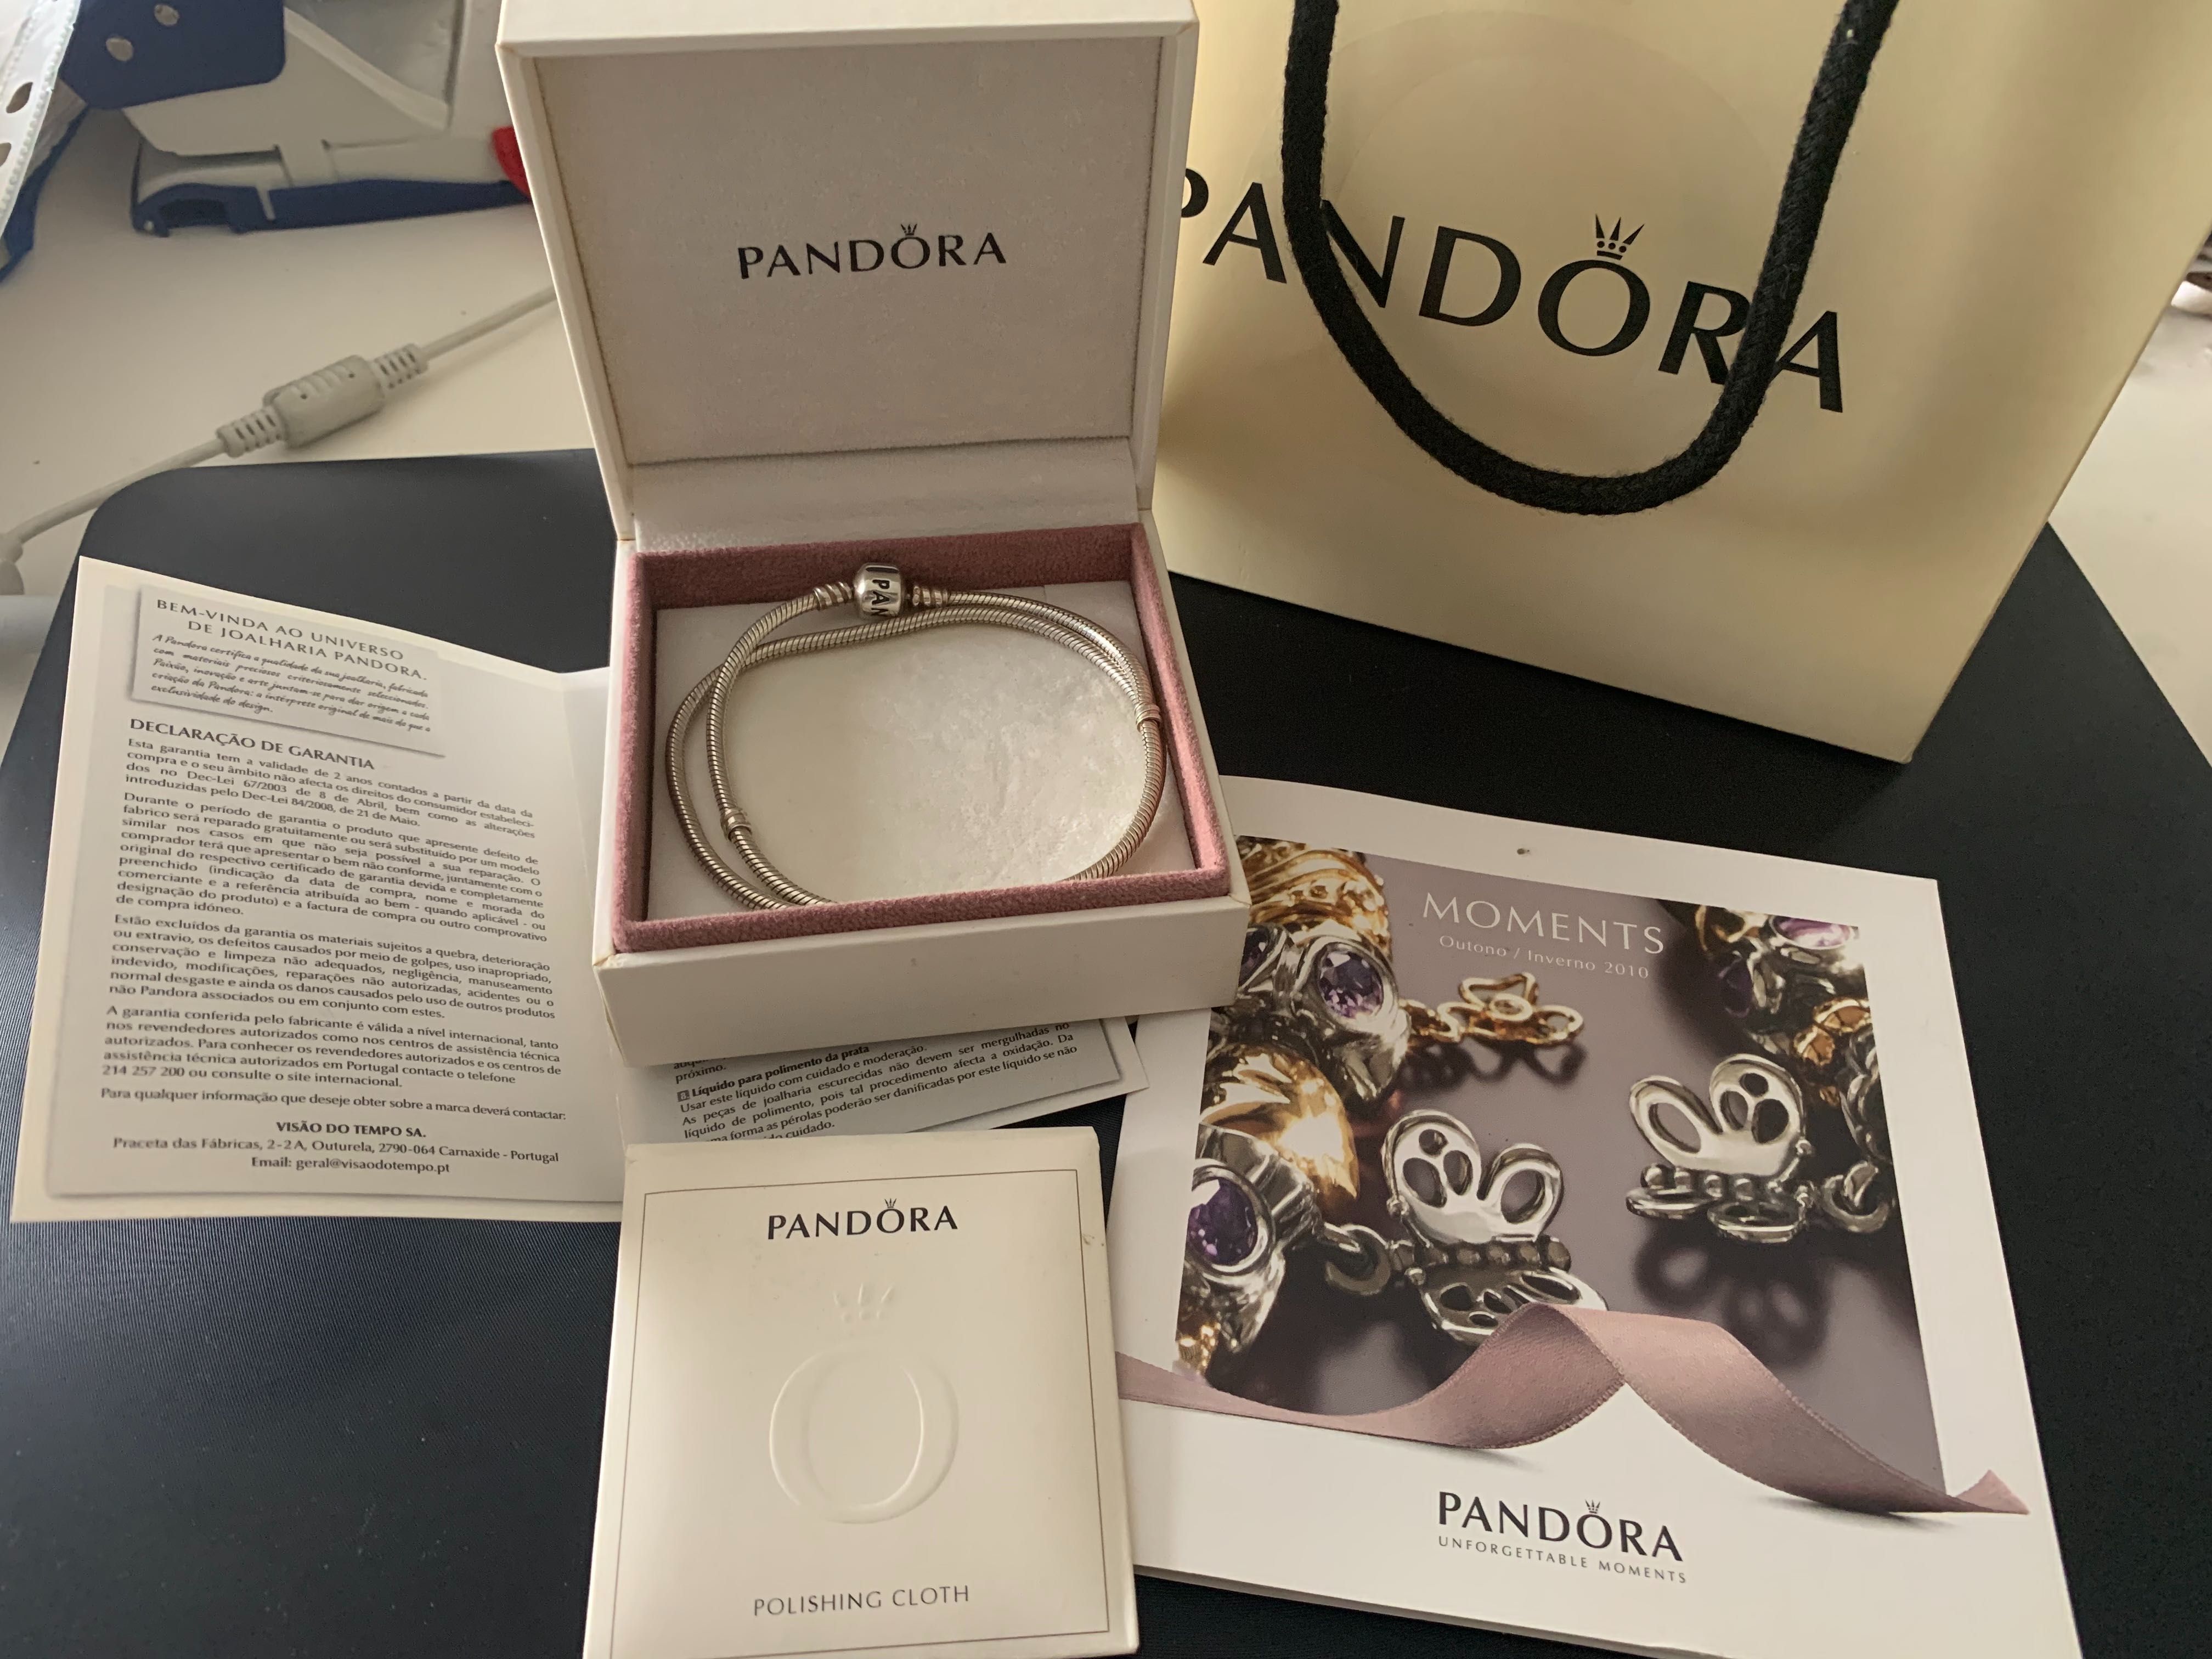 Colar Pandora Original + 3 contas Pandora de oferta